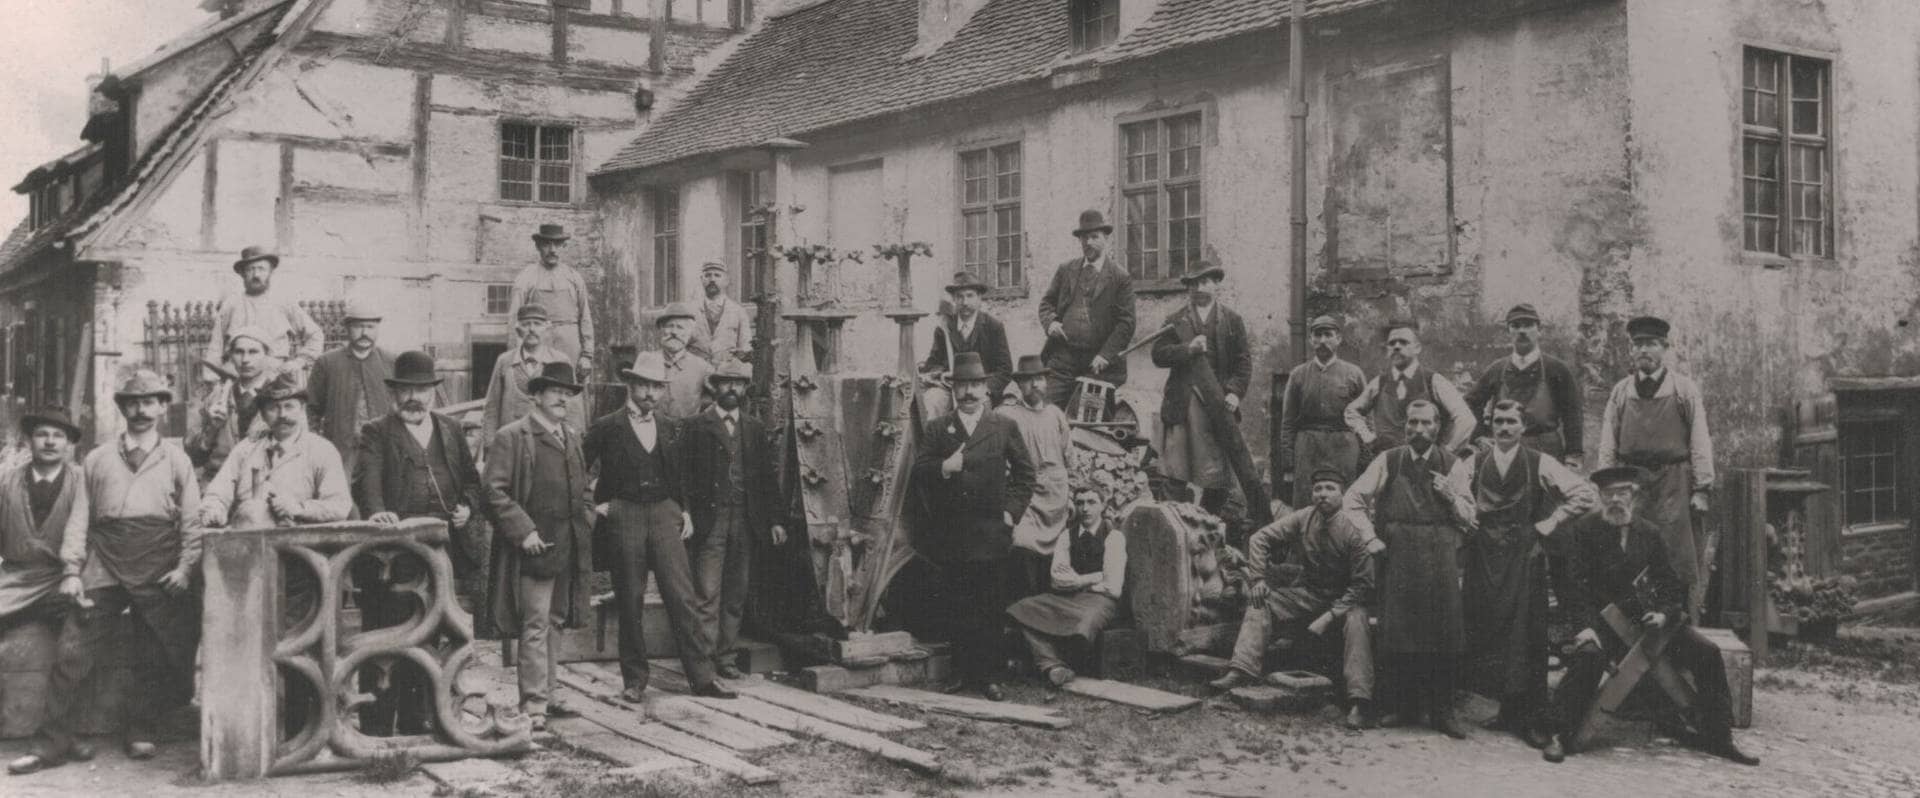 Ein Schwarz-Weiß Bild aus dem Jahr 1899. Die damalige Belegschaft der Münsterbauhütte ist zu sehen.